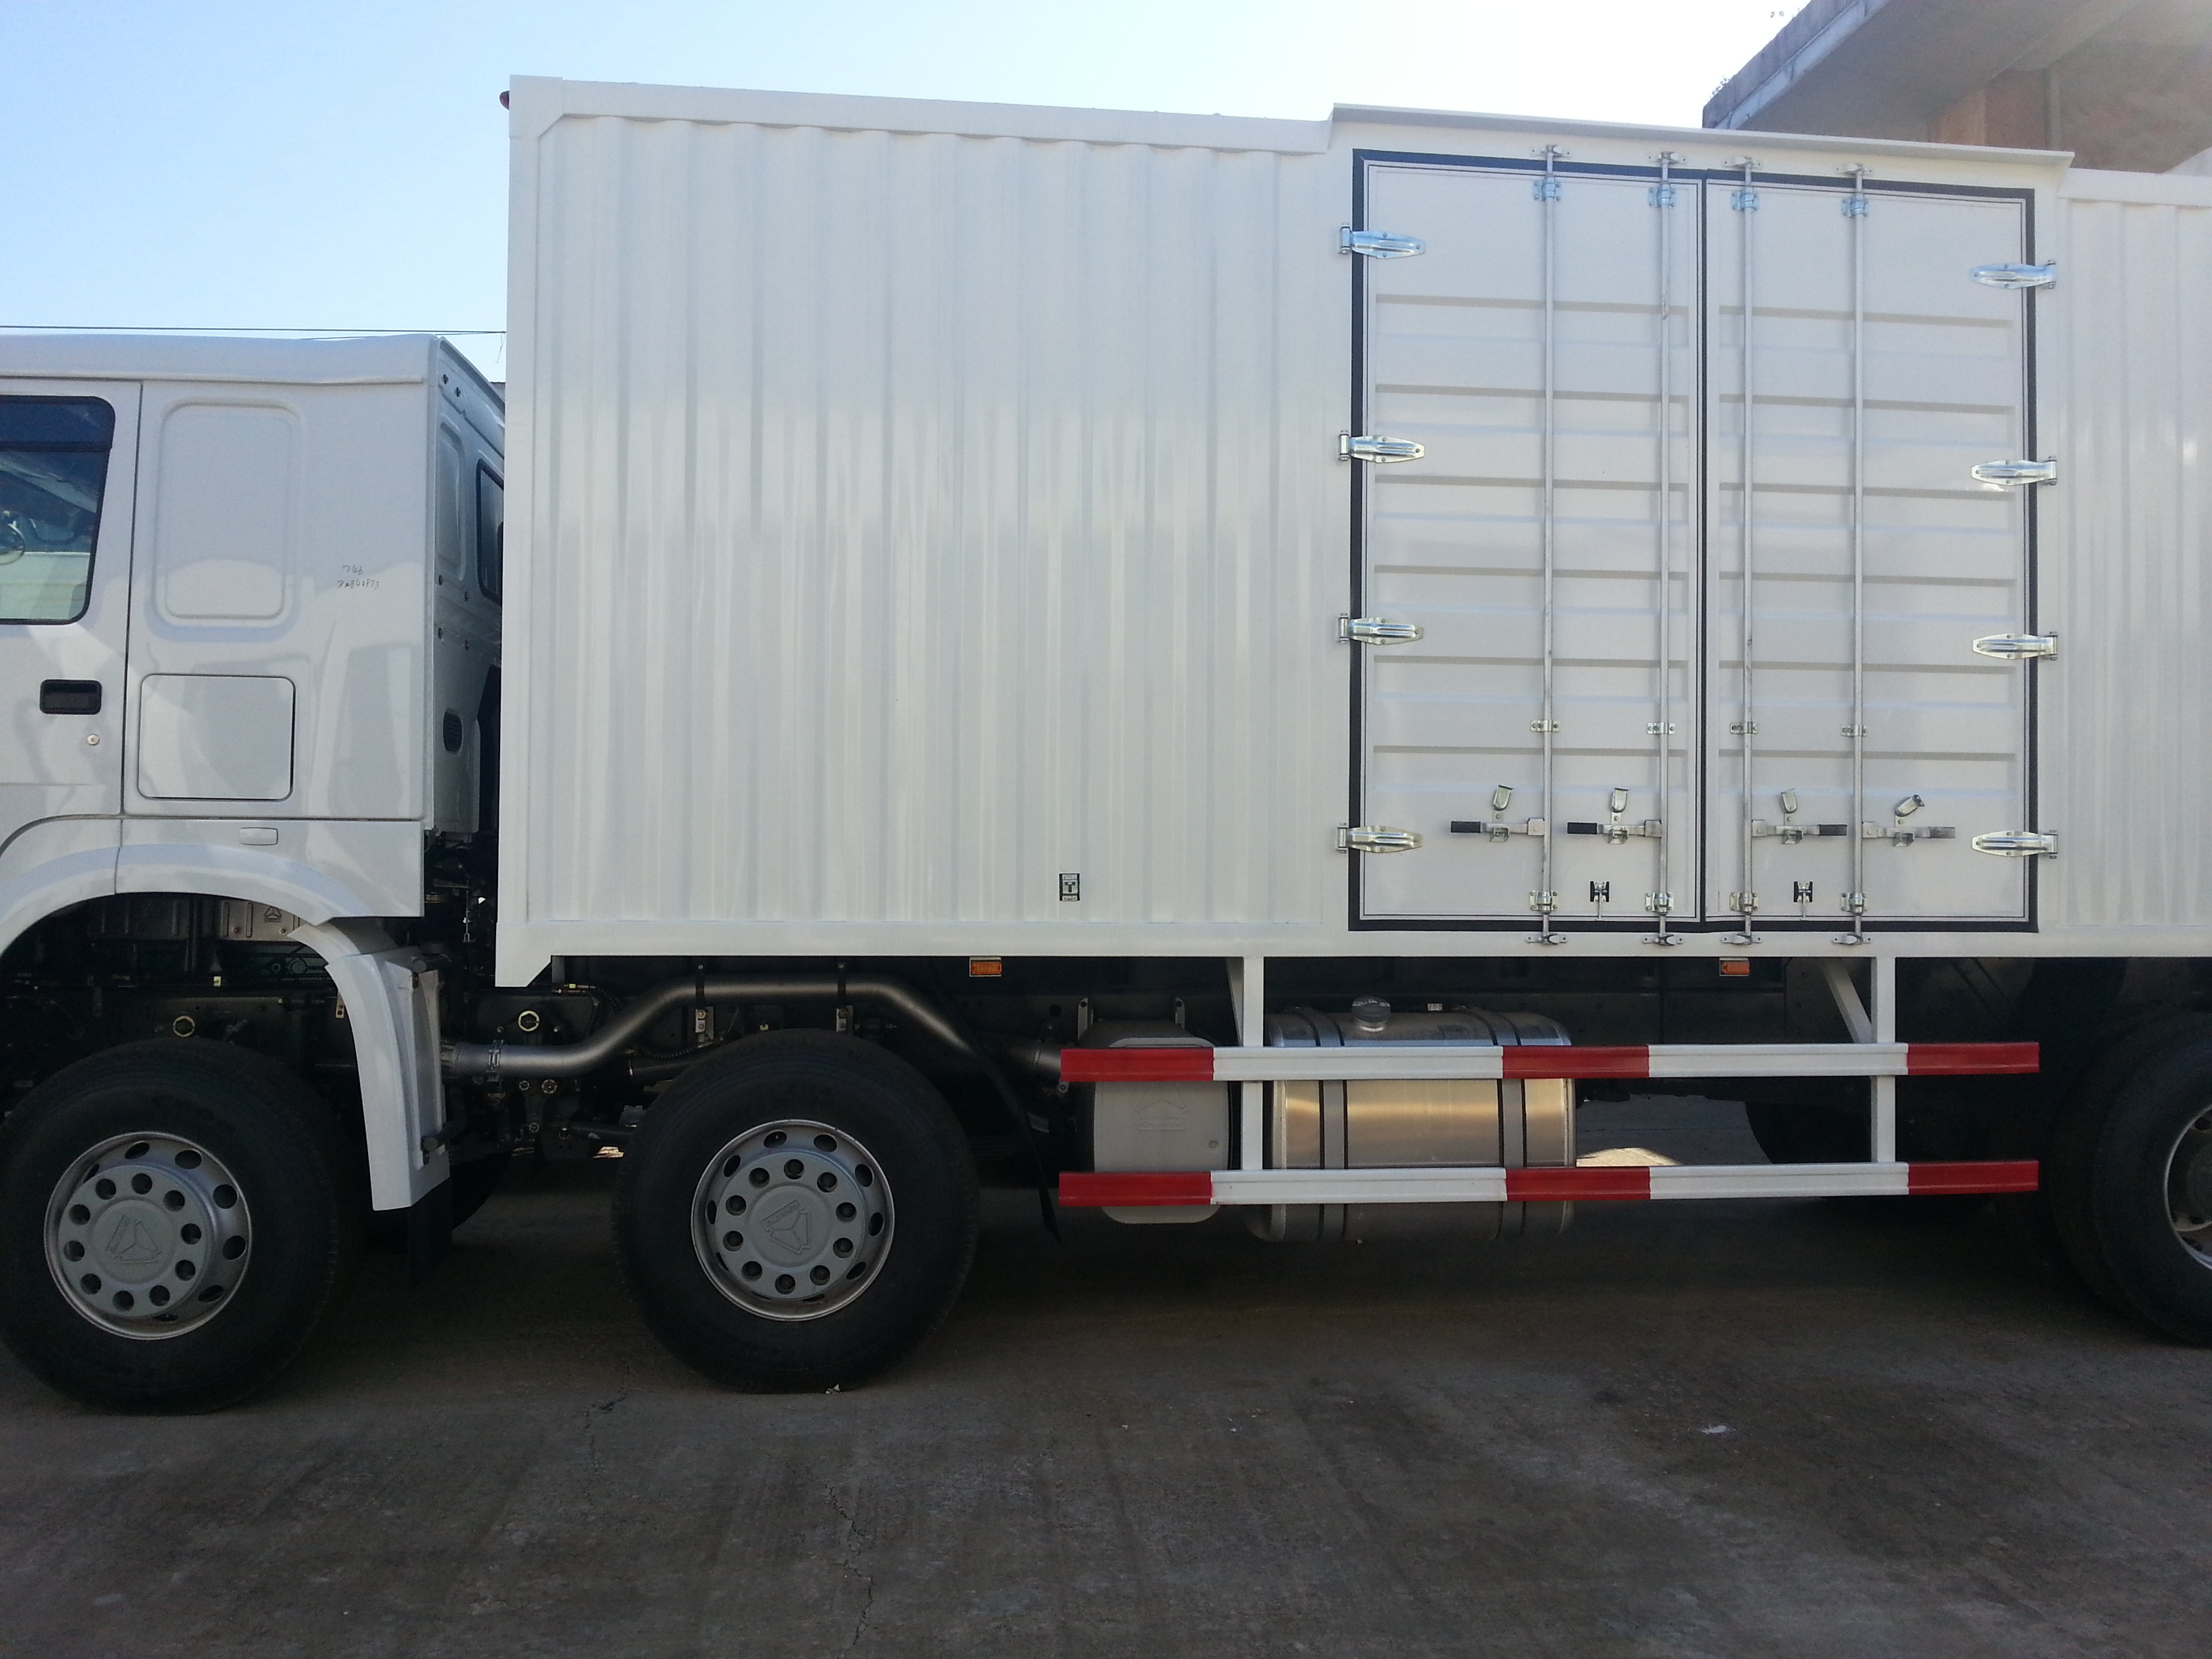 白41-50のトン容量の重い貨物トラックのディーゼル燃料のタイプ任意運転